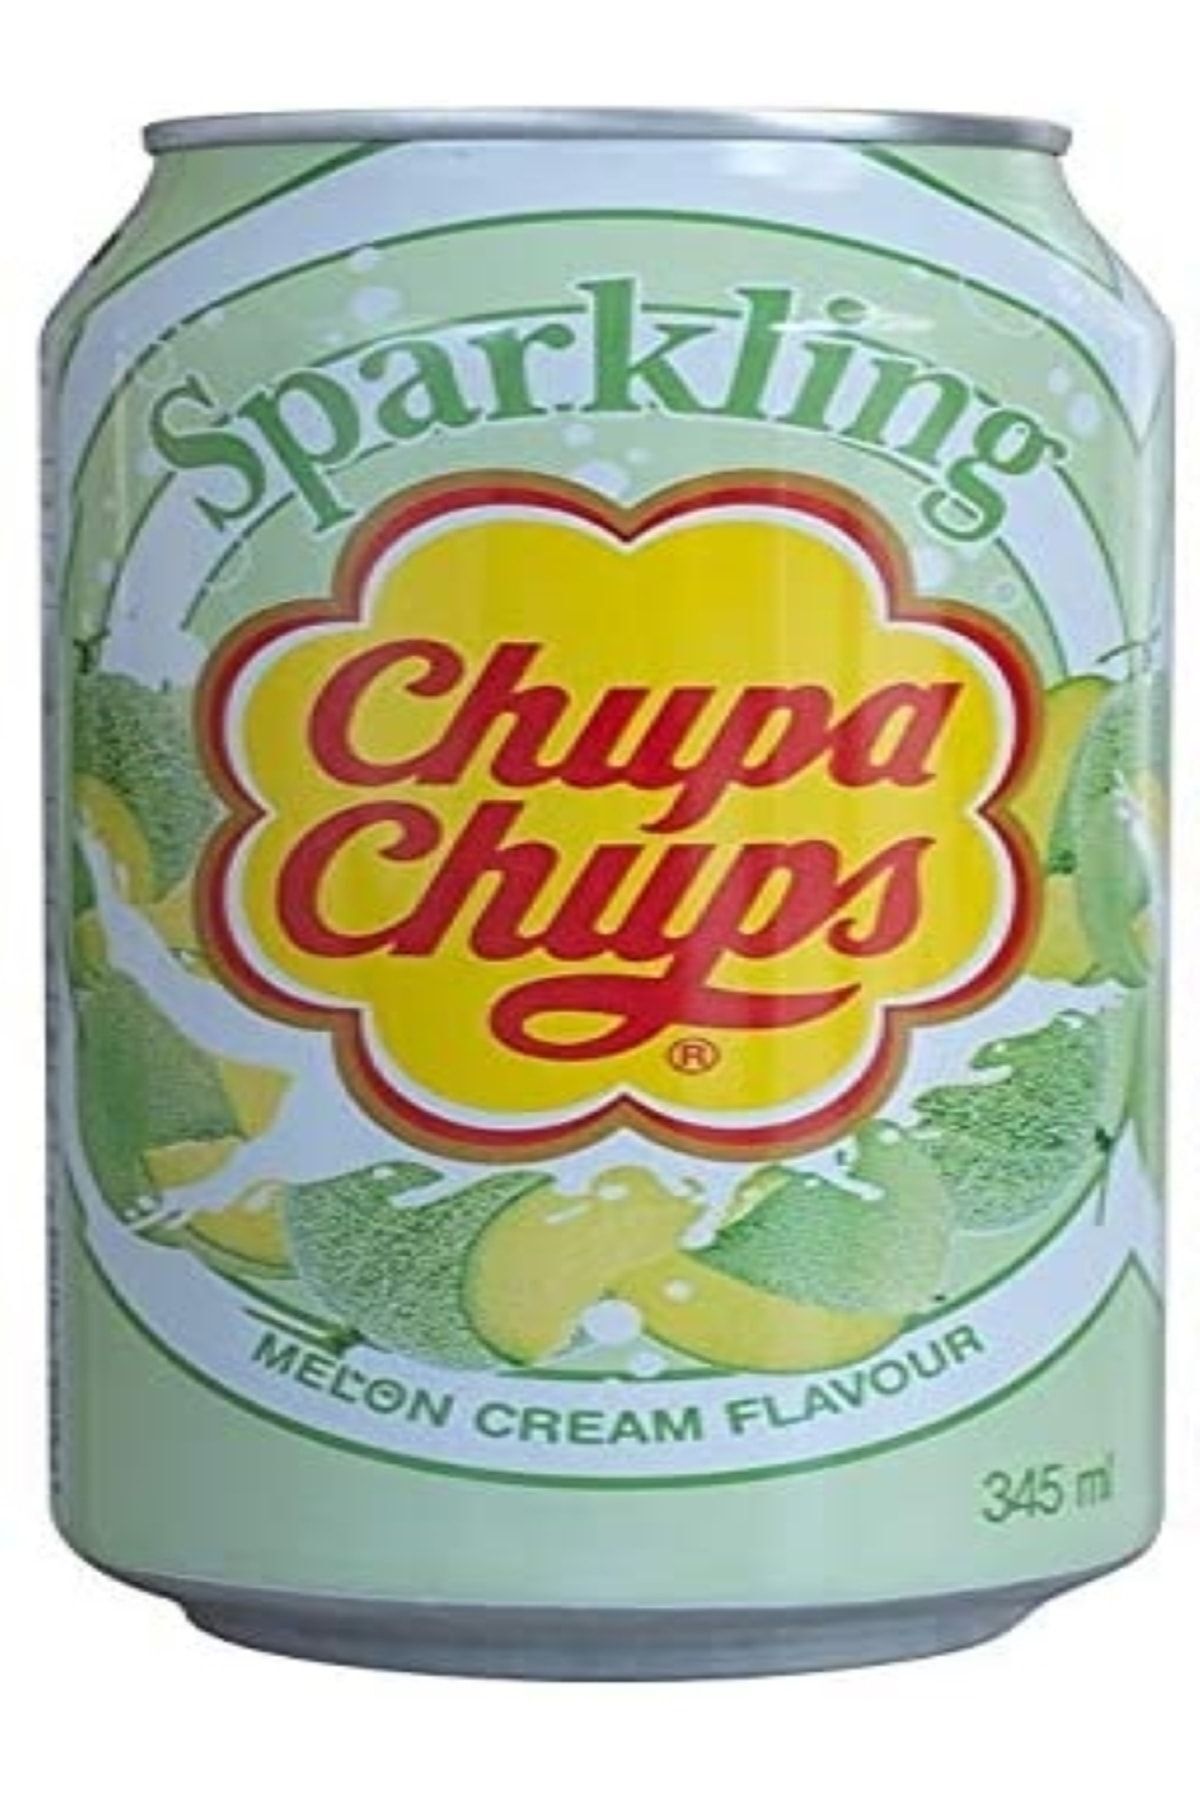 Chupa Chups Sparkling Melon & Cream Flavour Soda 345 Ml